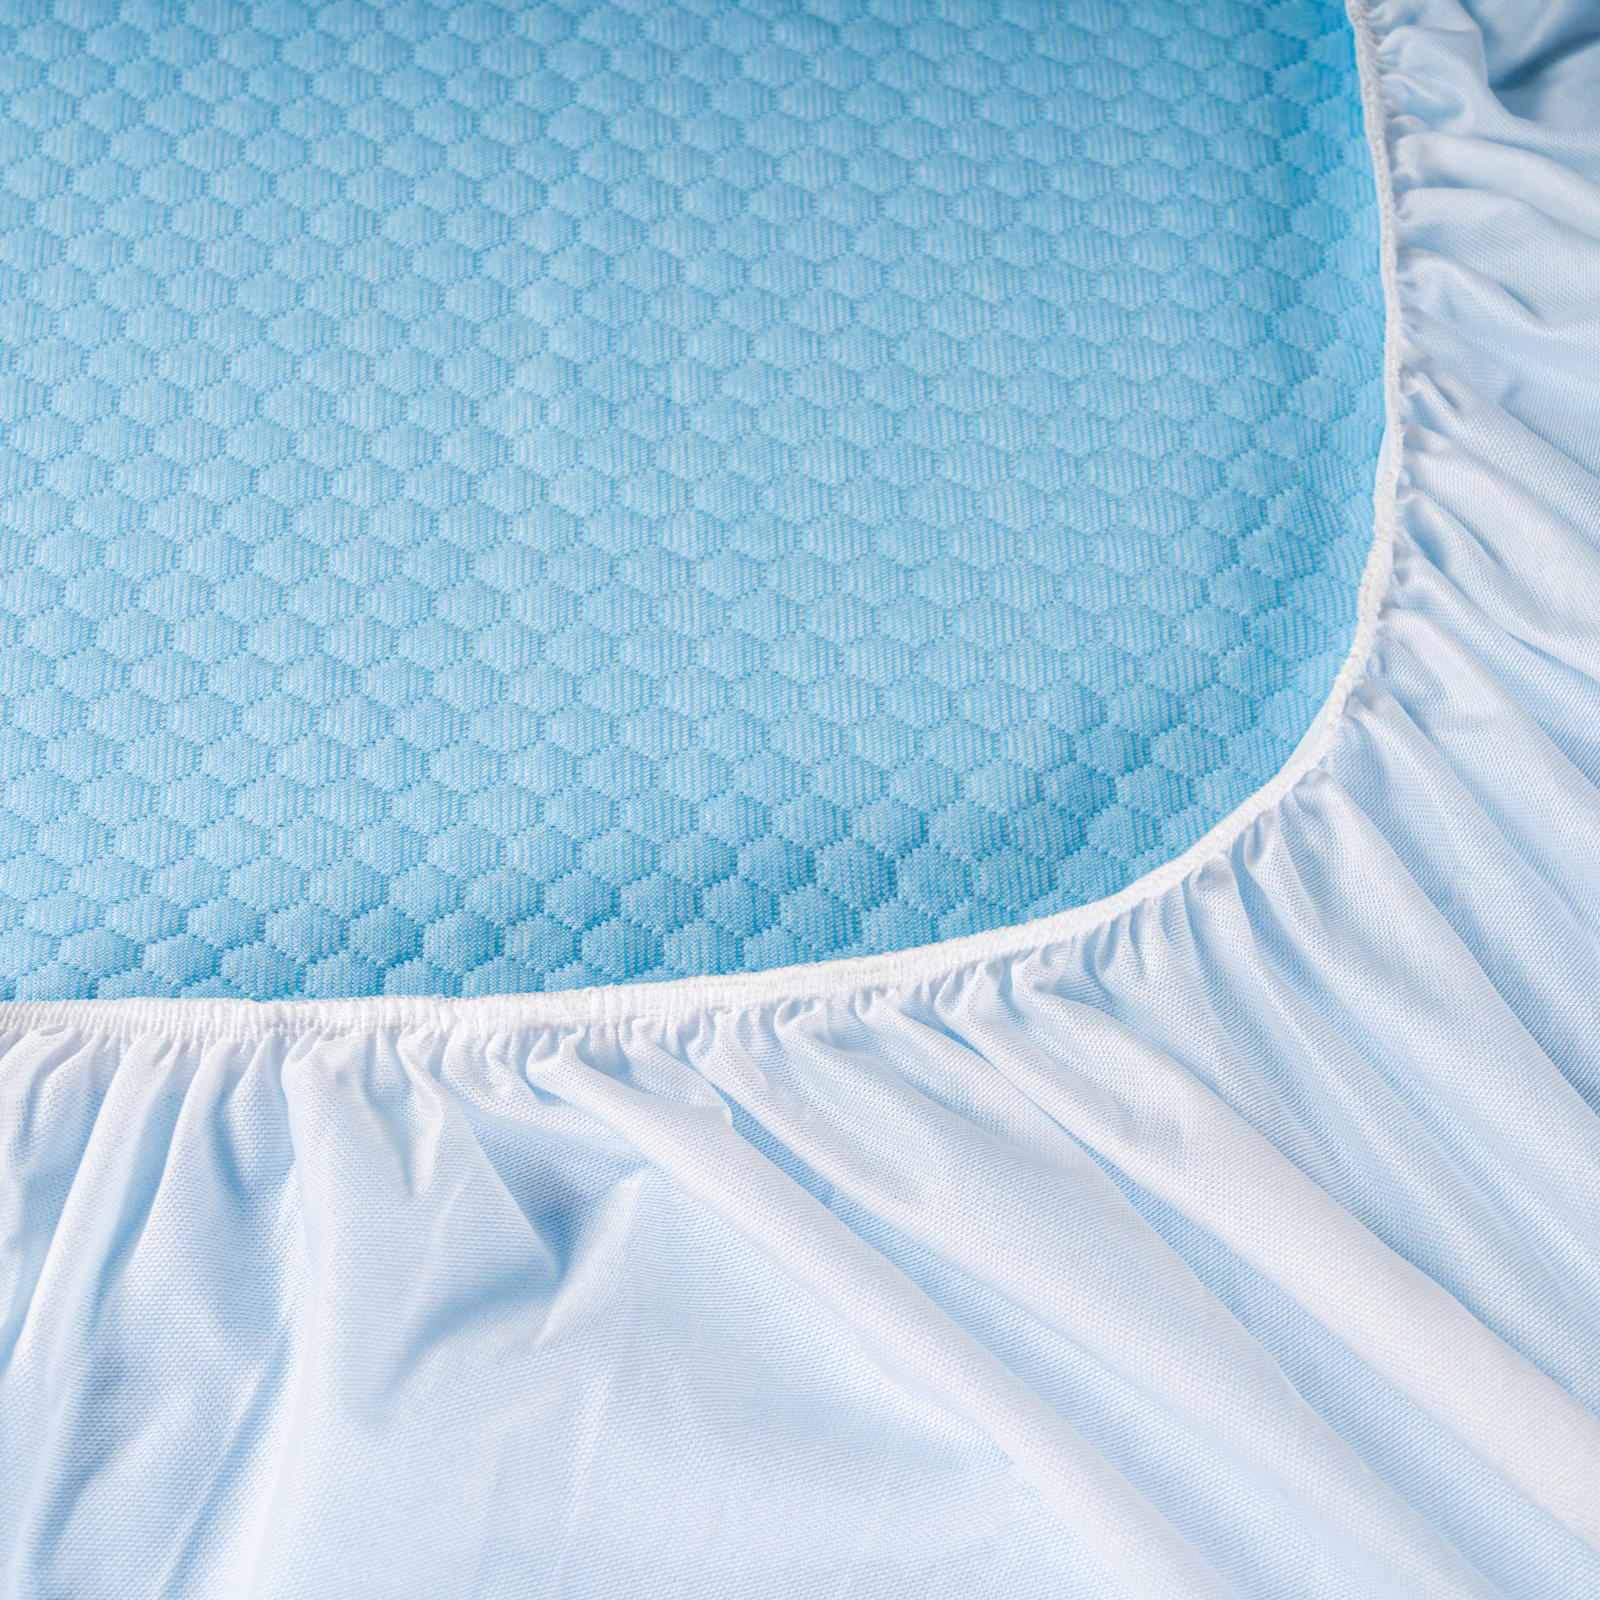 Наматрасник-чехол Medsleep Fresh Sleep белый с голубым 140х200х30 см, цвет голубой - фото 5